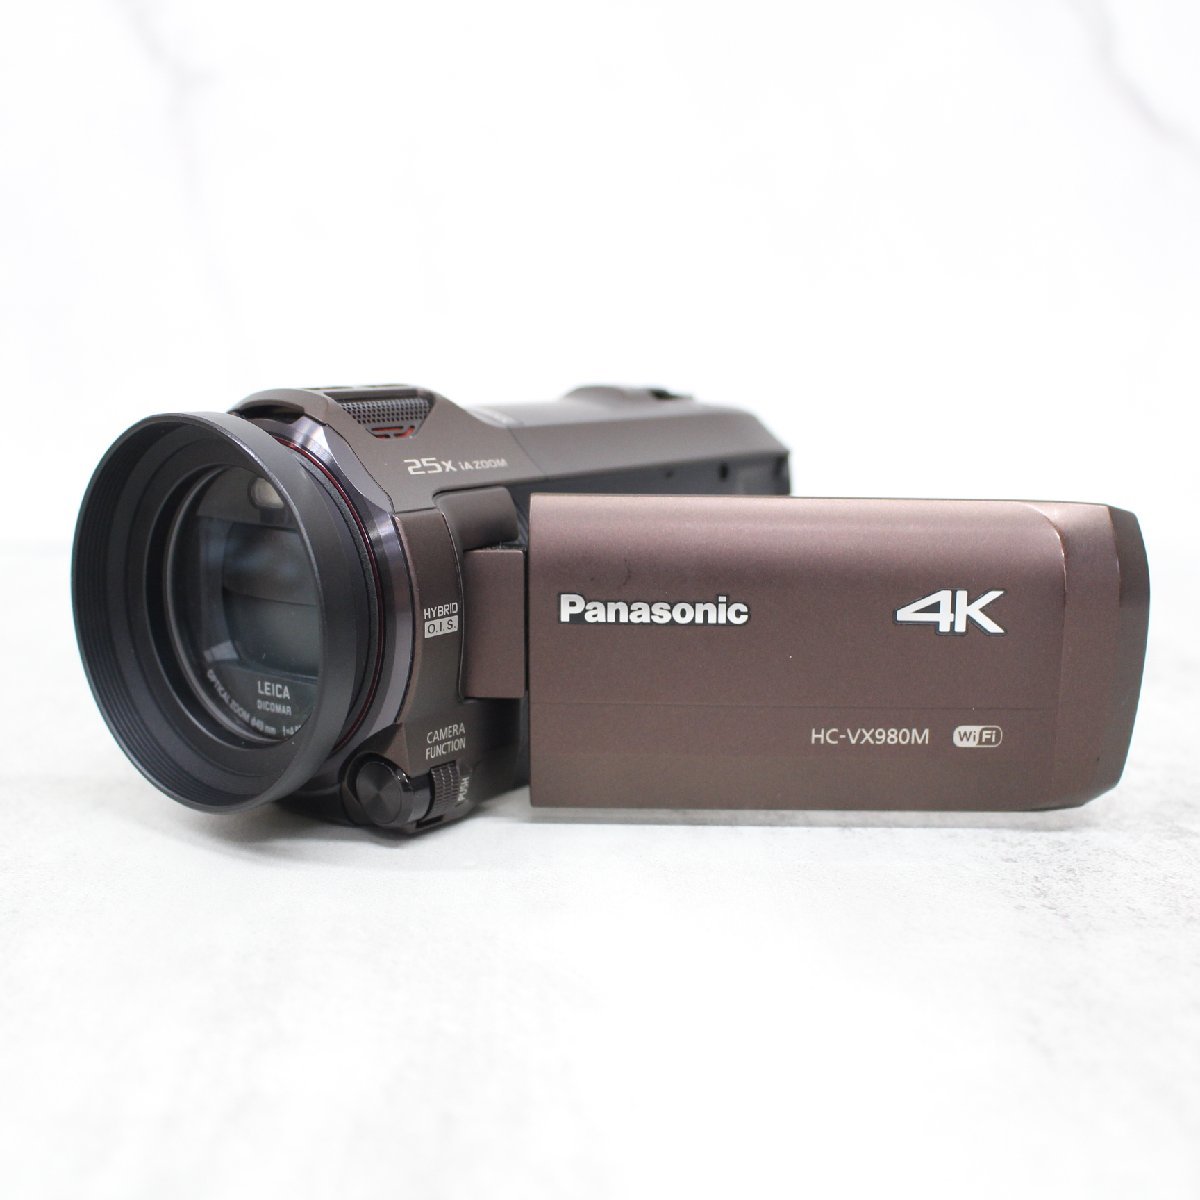 東京都渋谷区にて パナソニック デジタル4Kビデオカメラ HC-VX980M 2016年製 を出張買取させて頂きました。